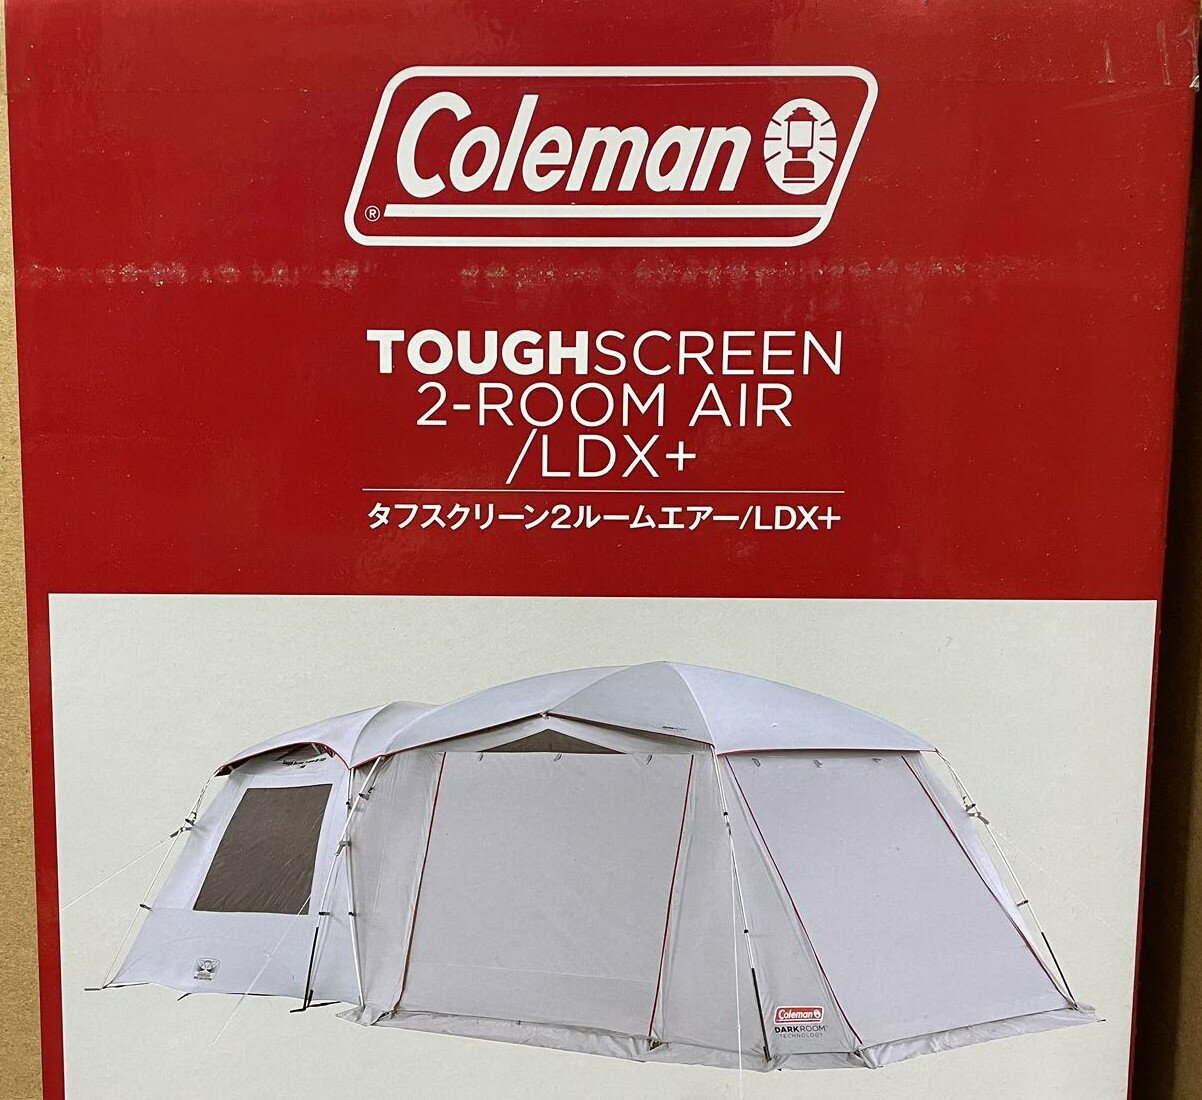 コールマン テント 2000039083 タフスクリーン2ルームエアー/LDX+ Coleman